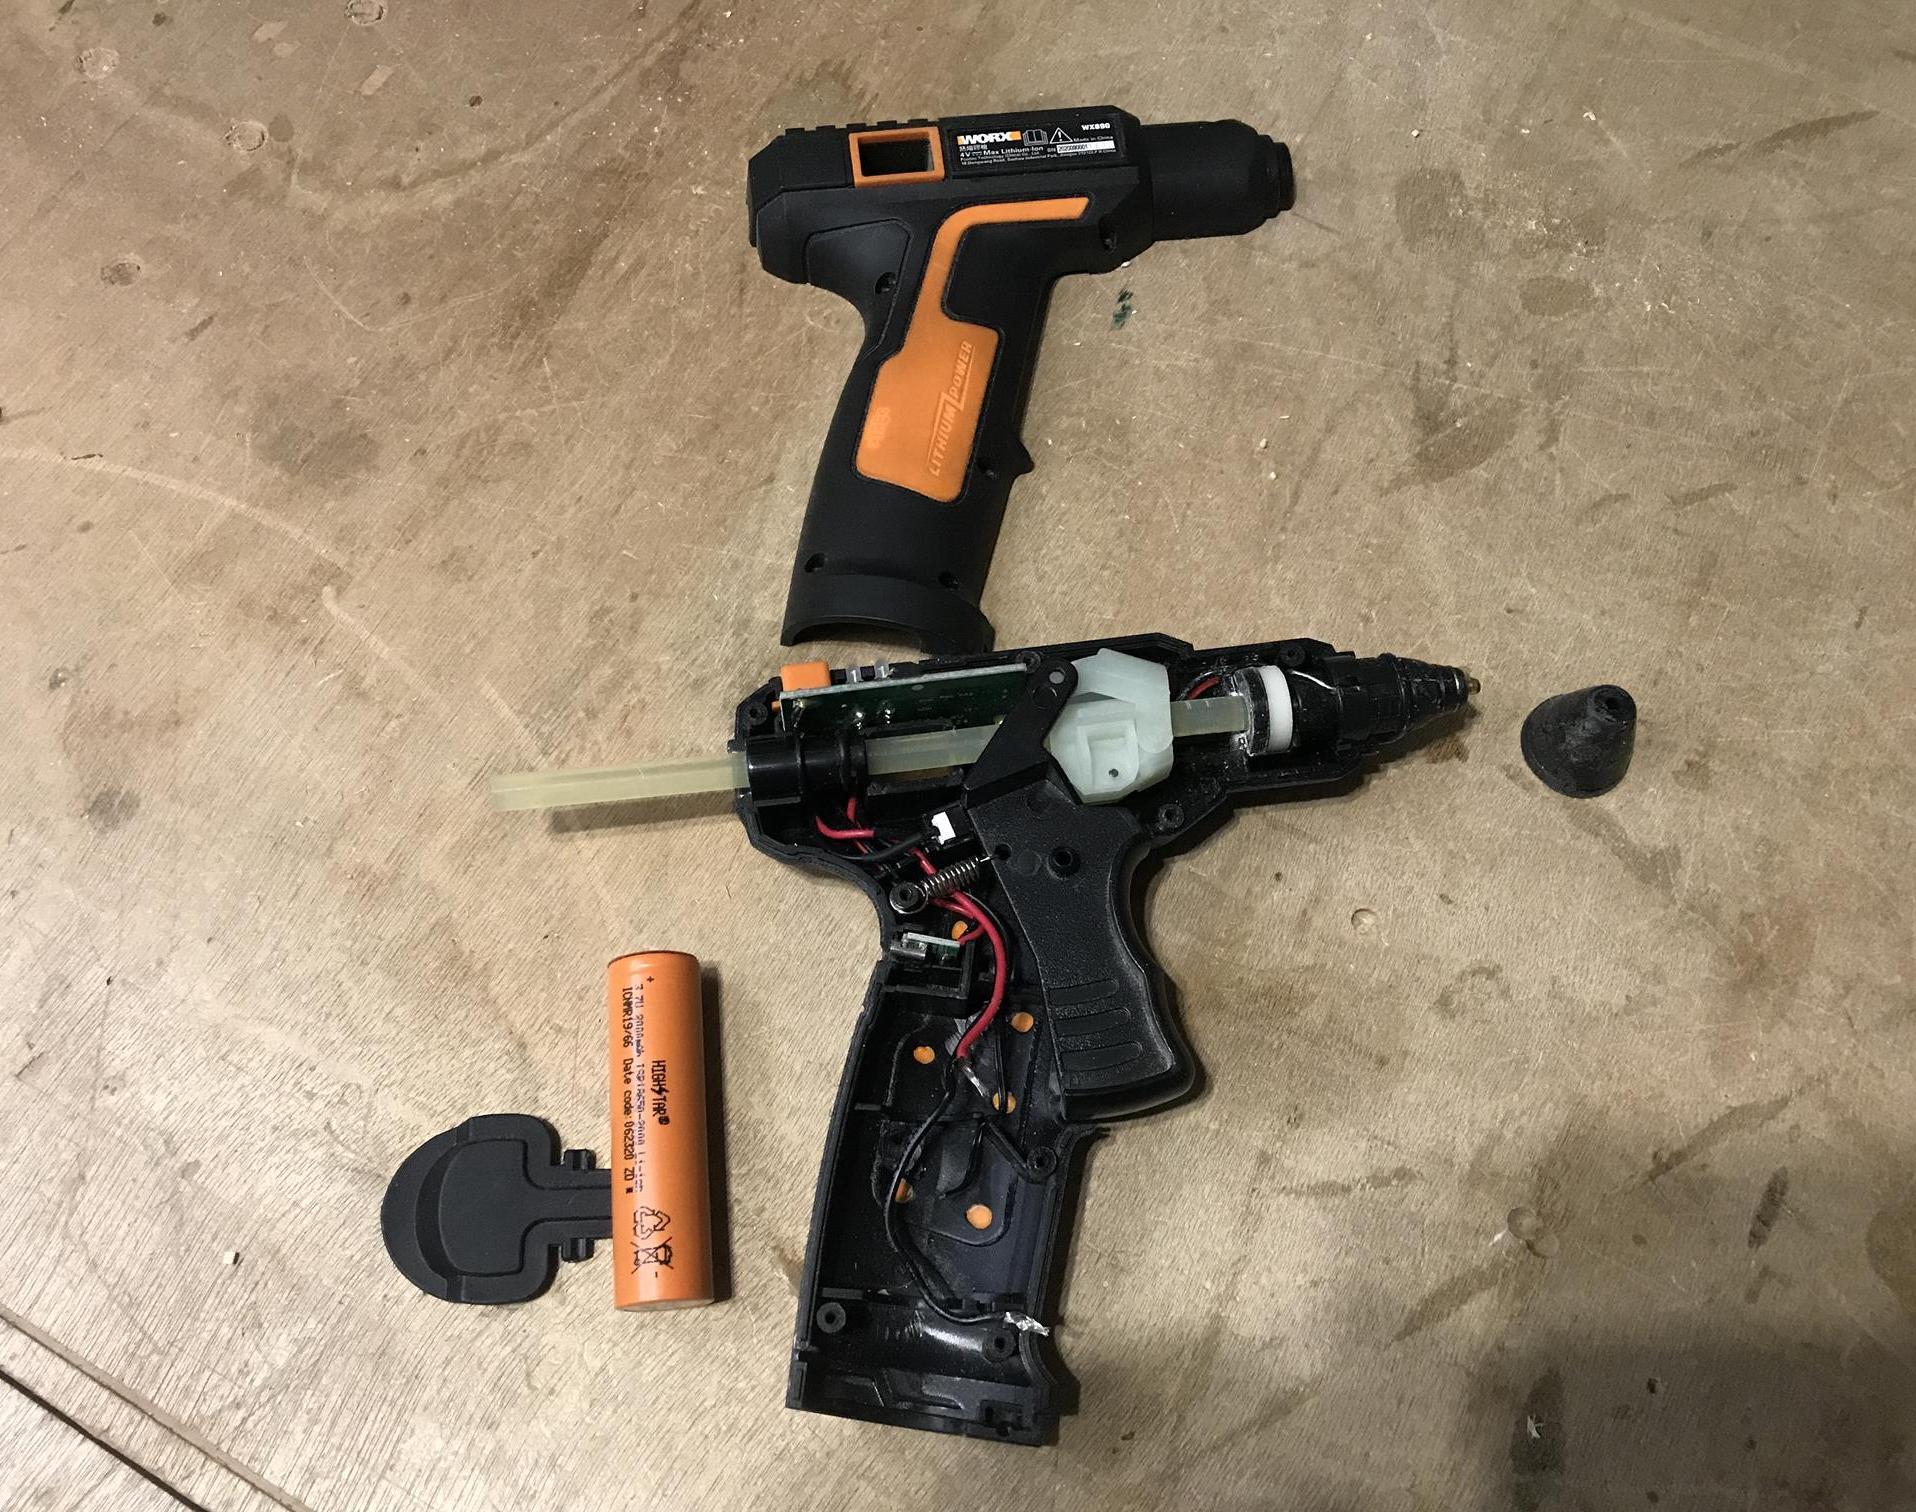 Battery Replaceable Hot Glue Gun